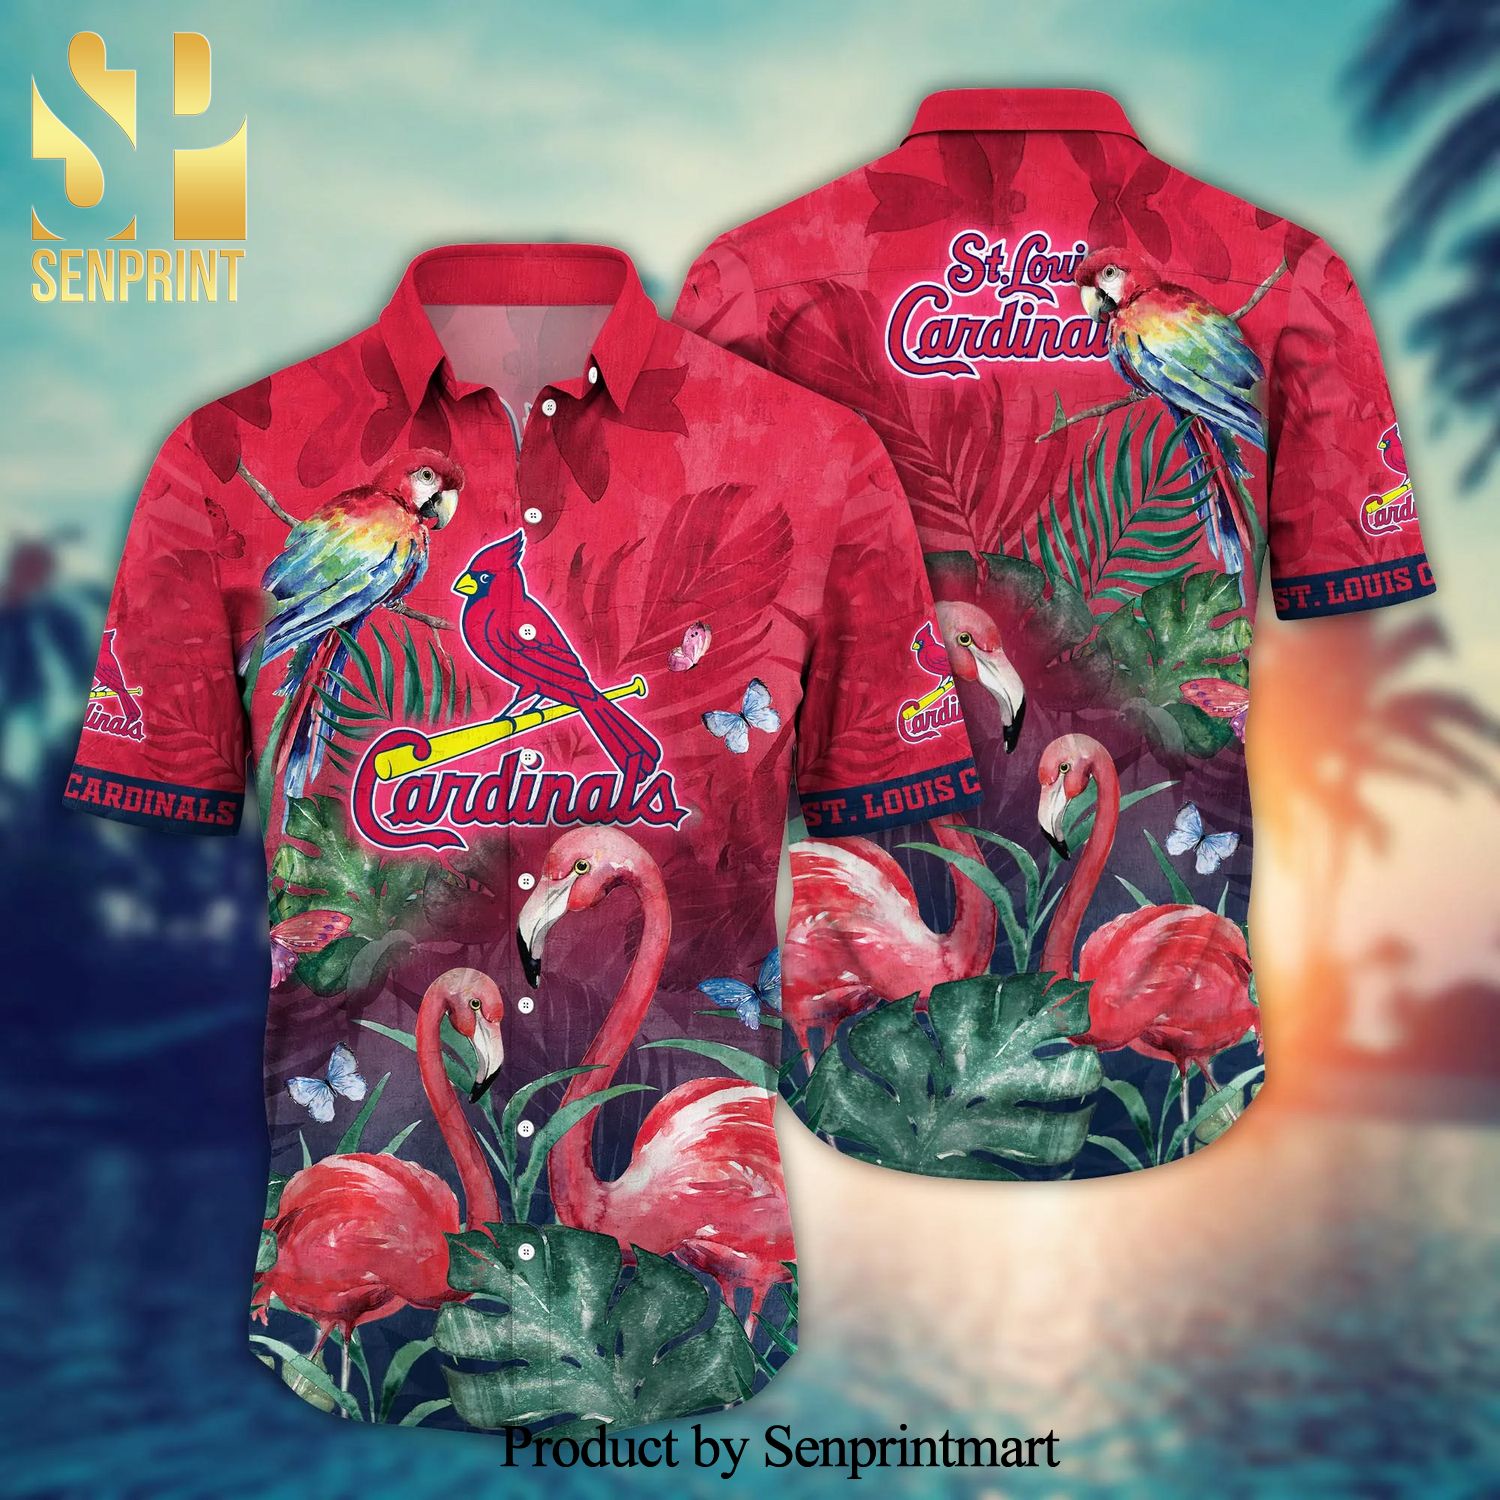 St. Louis Cardinals MLB Flower Hawaiian Shirt For Men Women Best Gift For  Fans - Freedomdesign